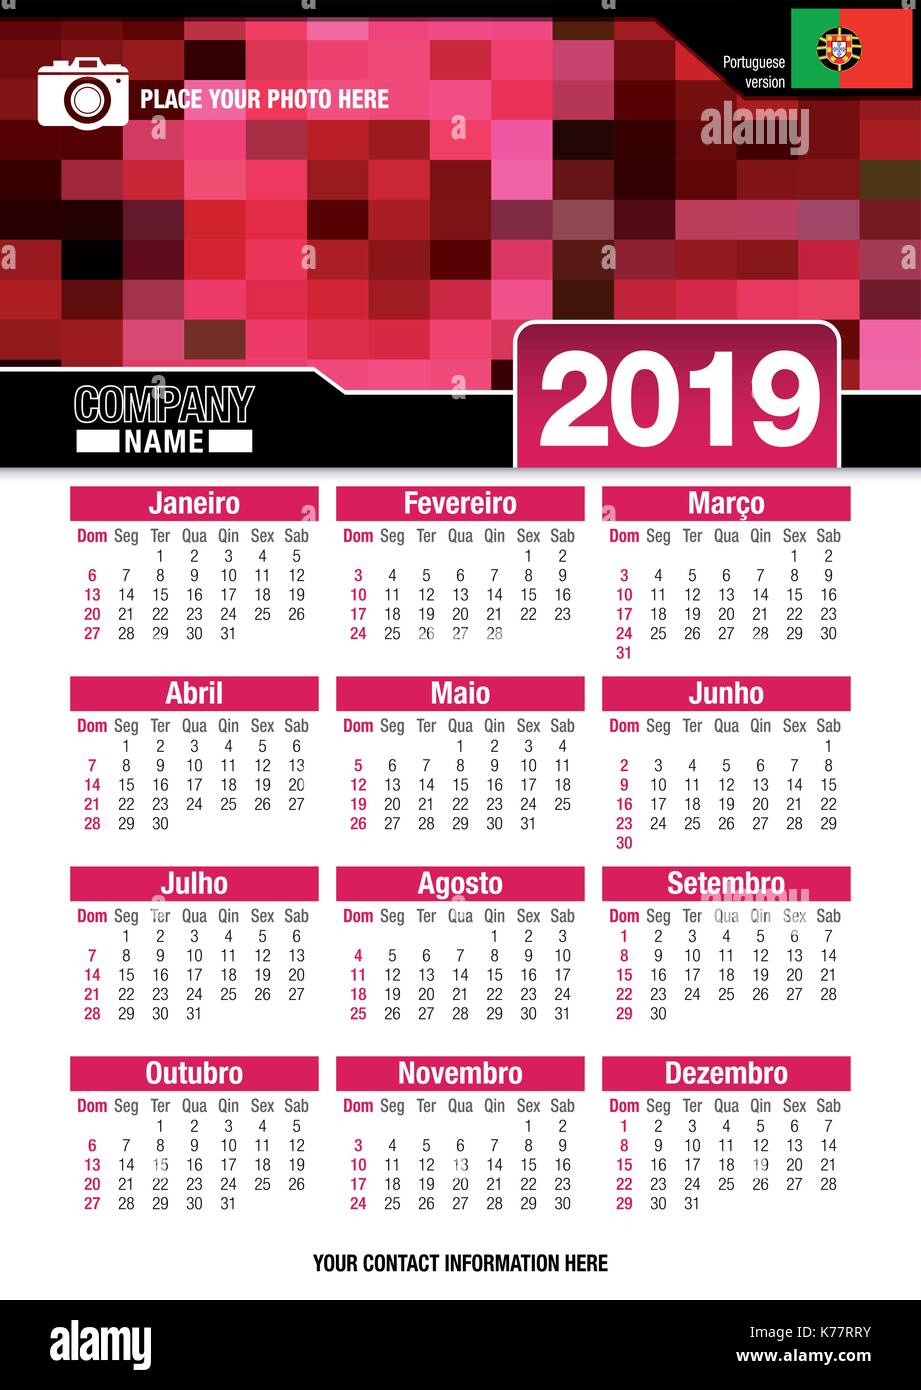 Utile calendario da parete 2019 con design di colori rosso mosaico. Formato A4 verticale. Dimensioni: 210mm x 297mm. Versione portoghese - immagine vettoriale Illustrazione Vettoriale